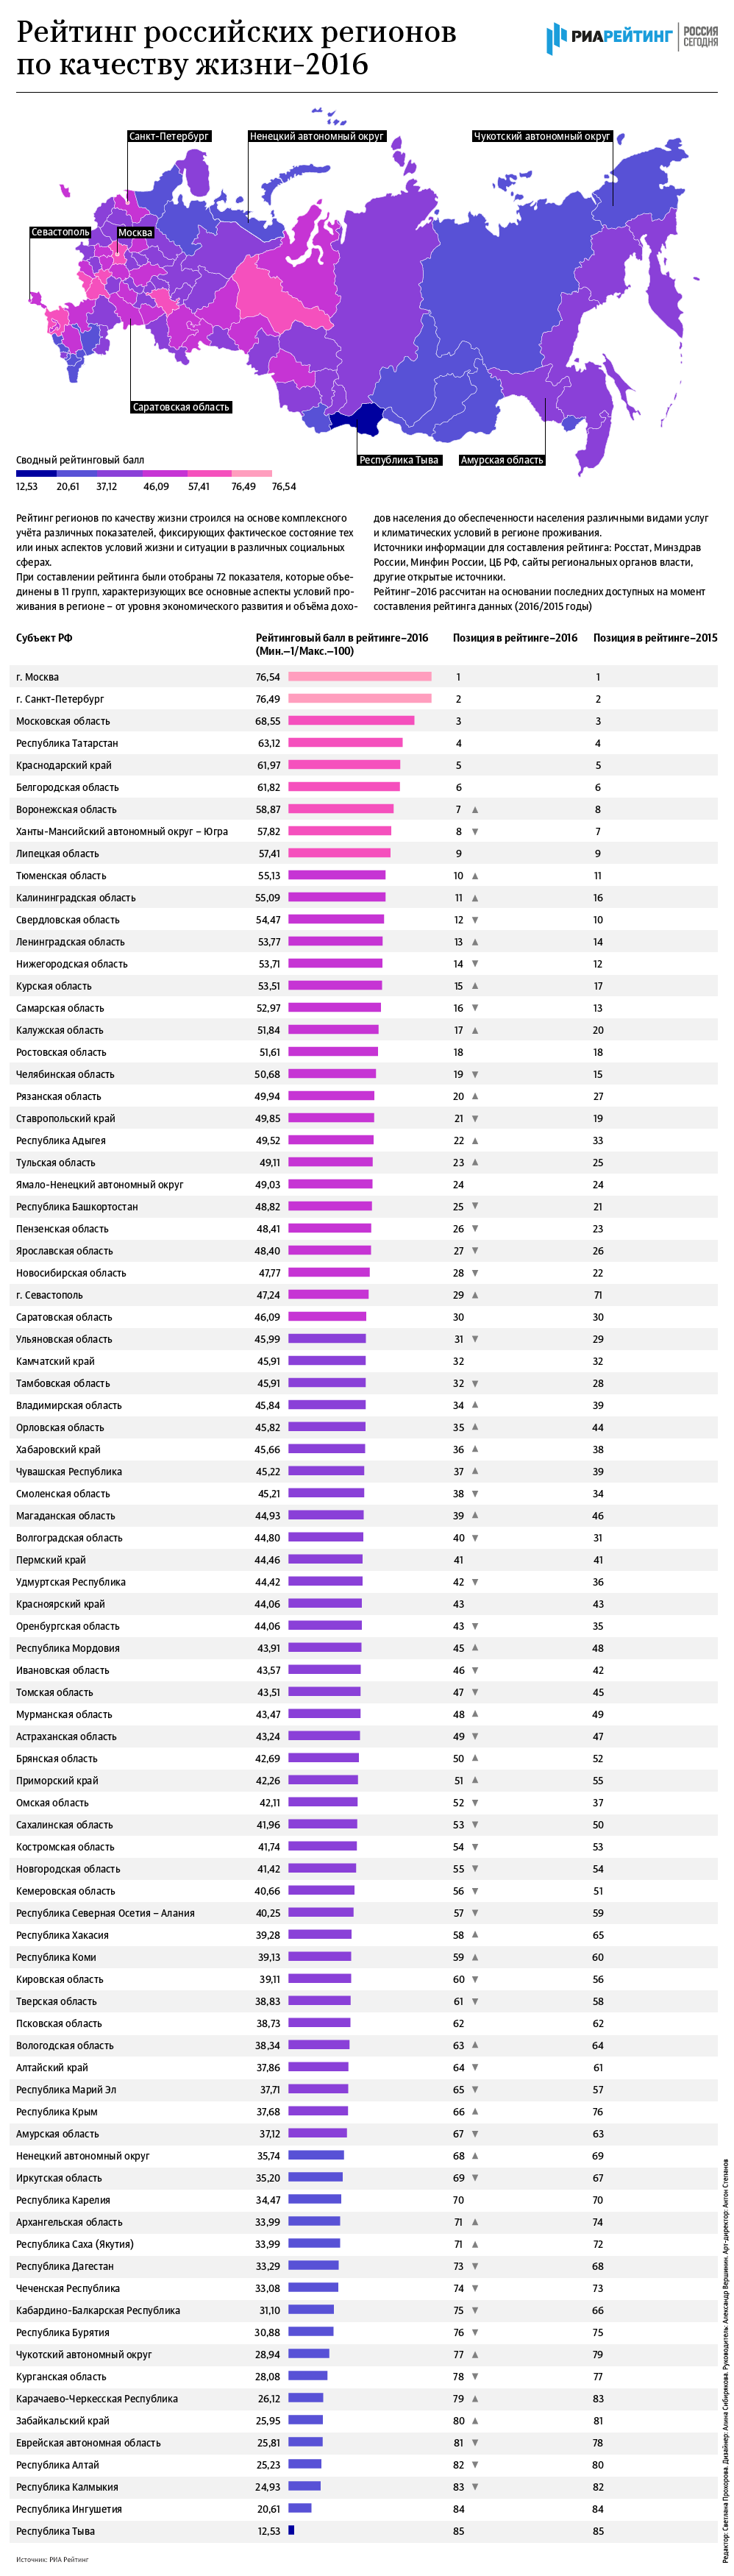 Рейтинг российских регионов по качеству жизни-2016